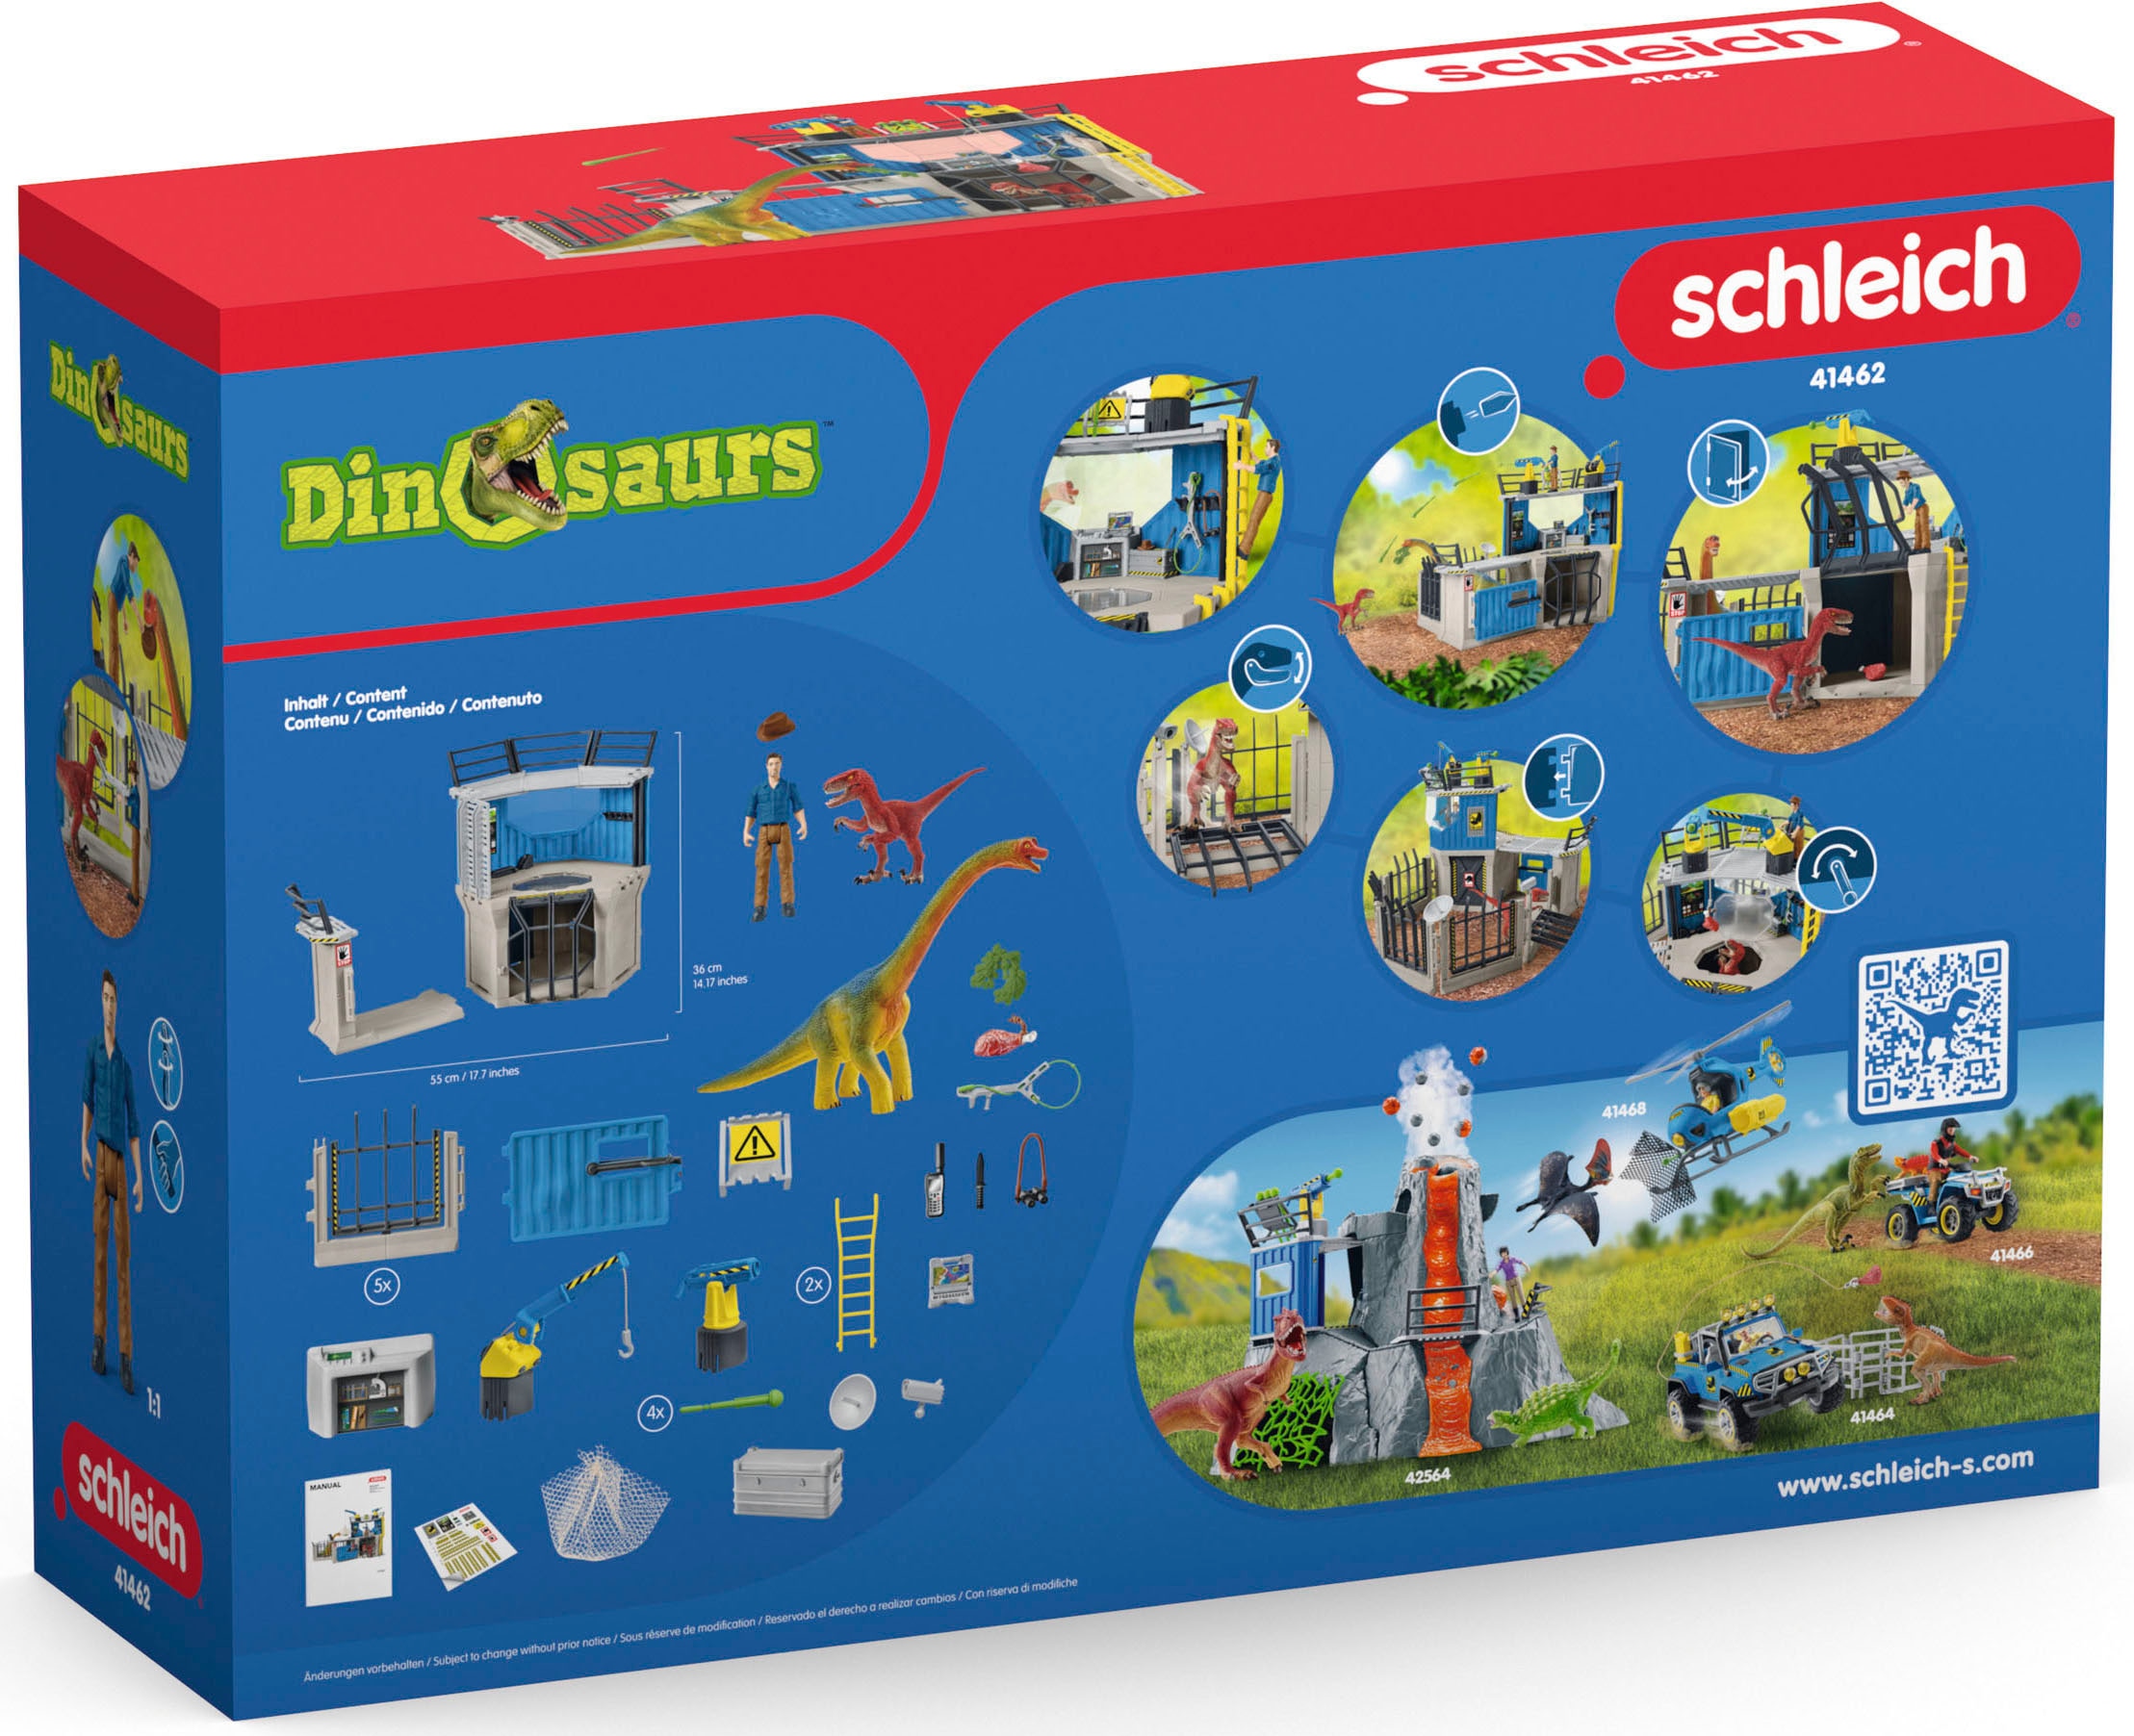 Schleich® Spielwelt »DINOSAURS, Grosse Dino-Forschungsstation (41462)«, (Set), ; Made in Germany